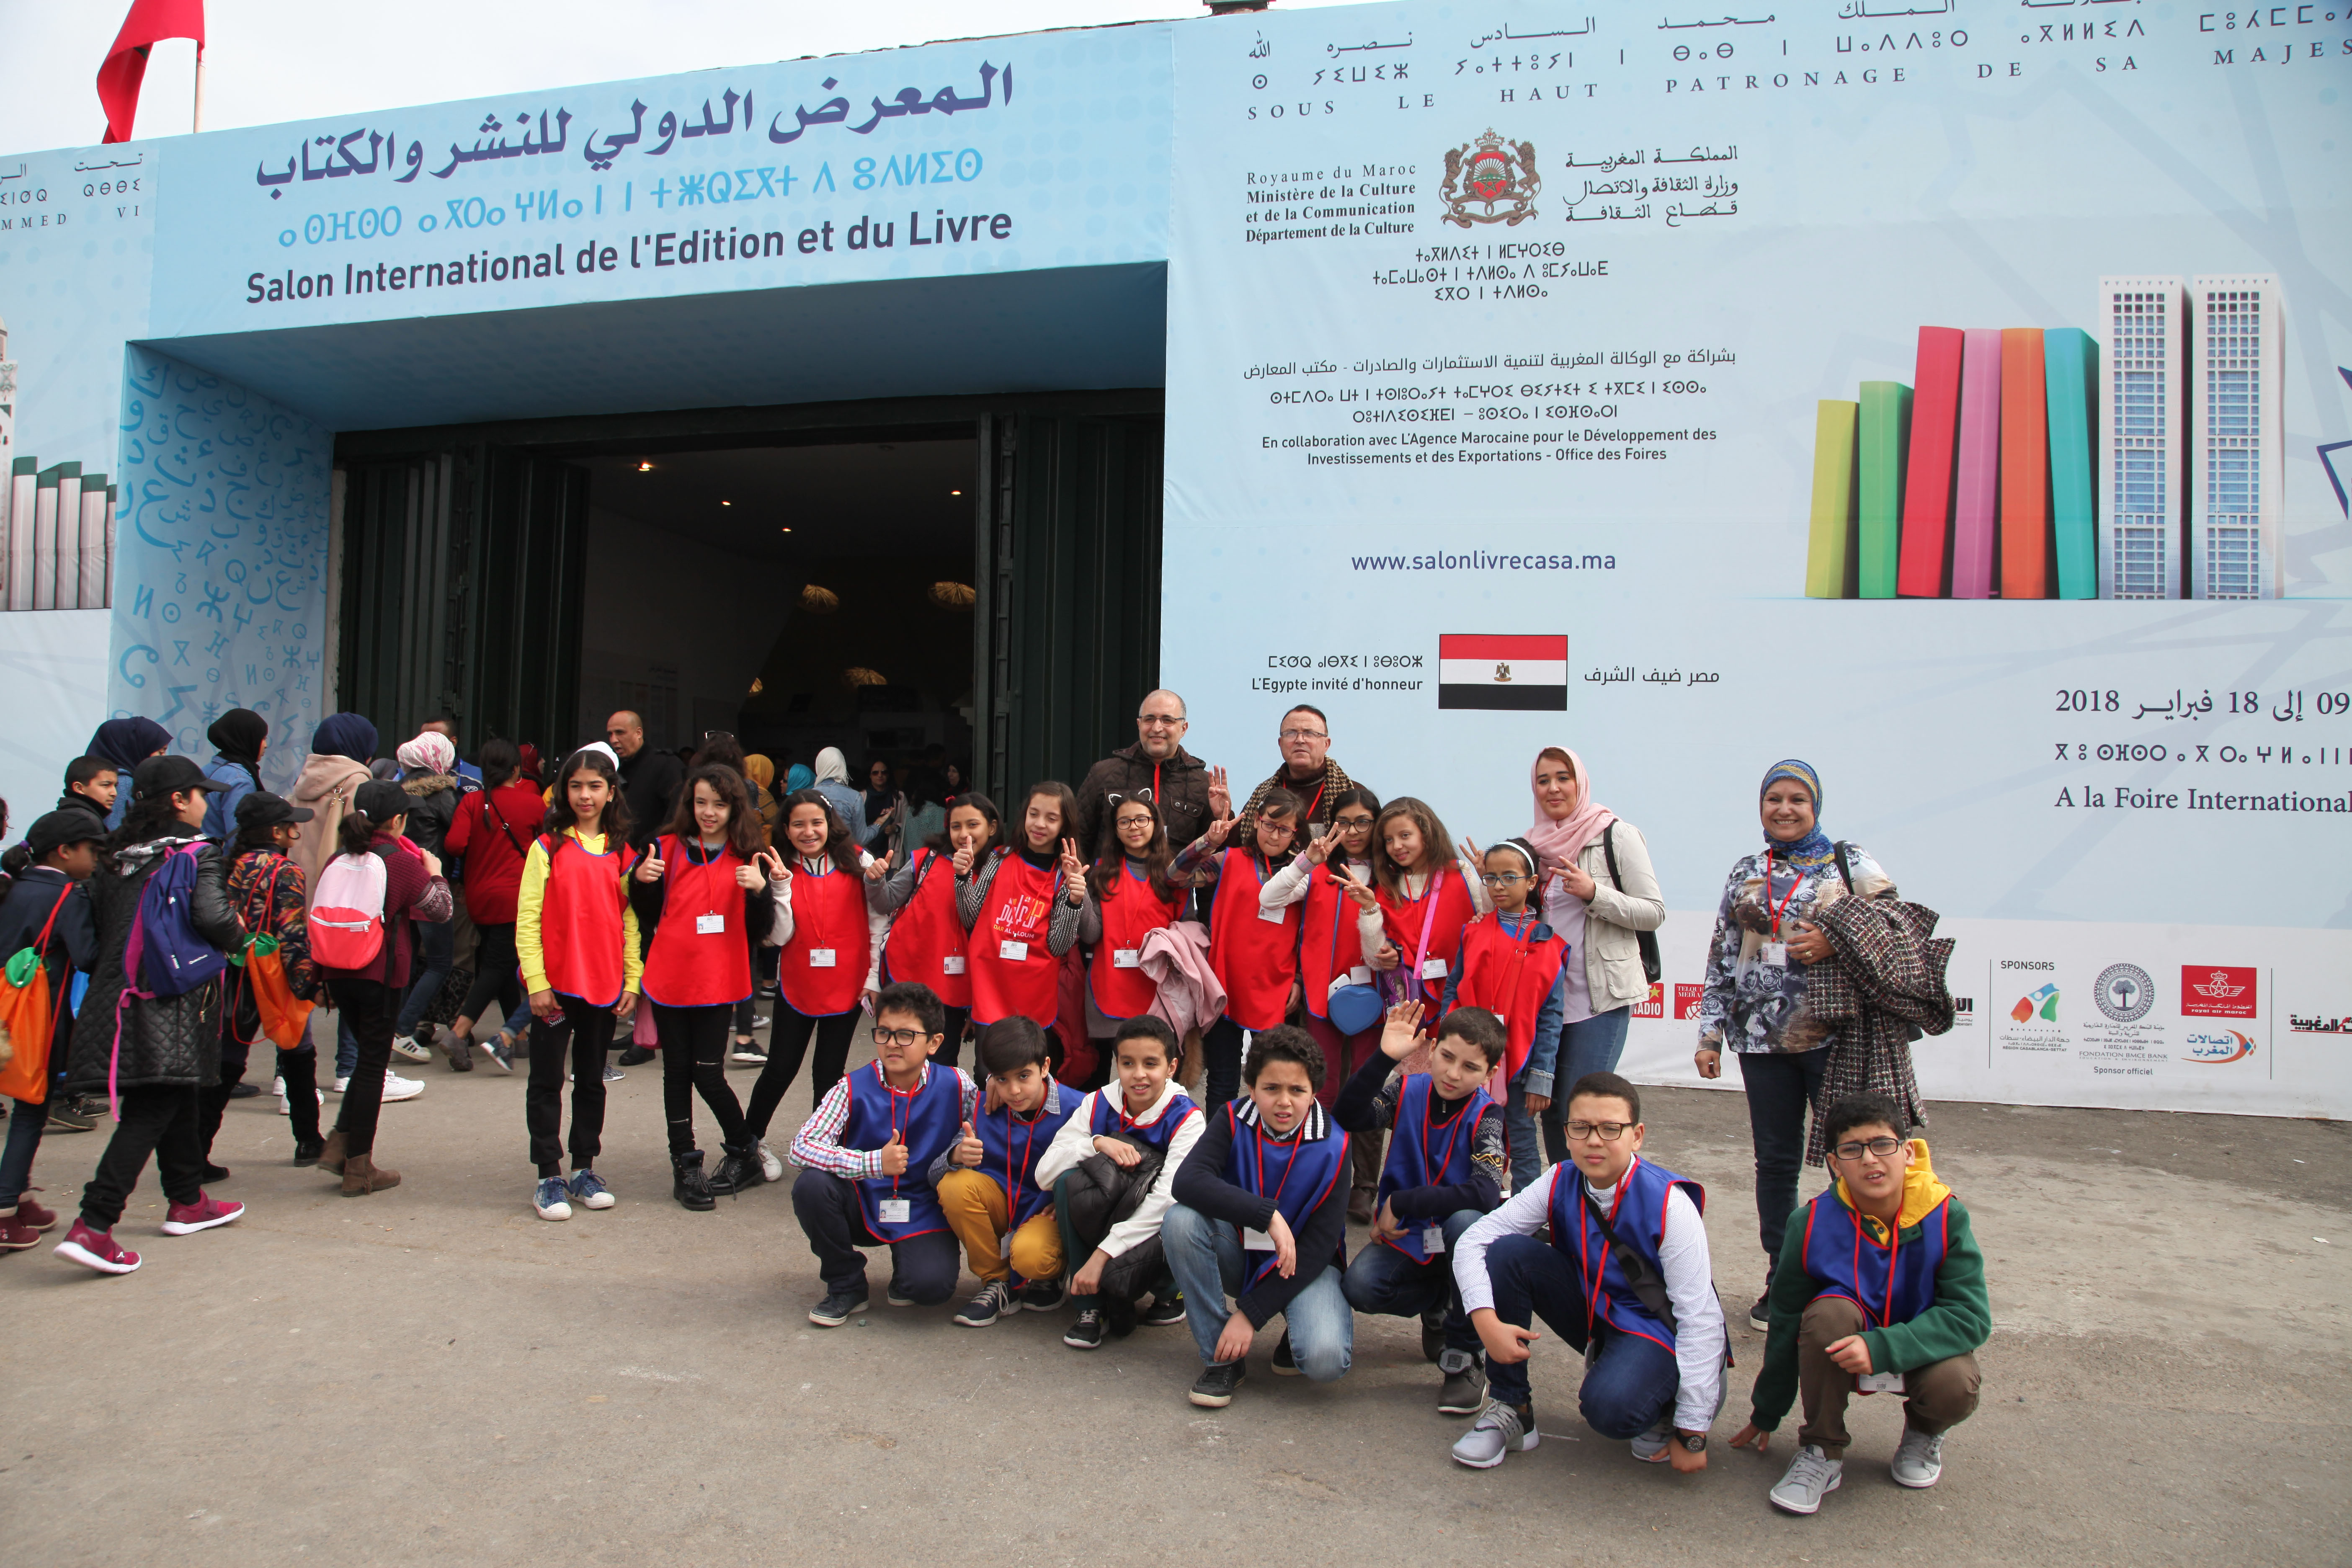  مؤسسة "دار العلوم" تنظم لفائدة تلاميذها رحلة لزيارة إلى المعرض الدولي للنشر والكتاب بالدار البيضاء